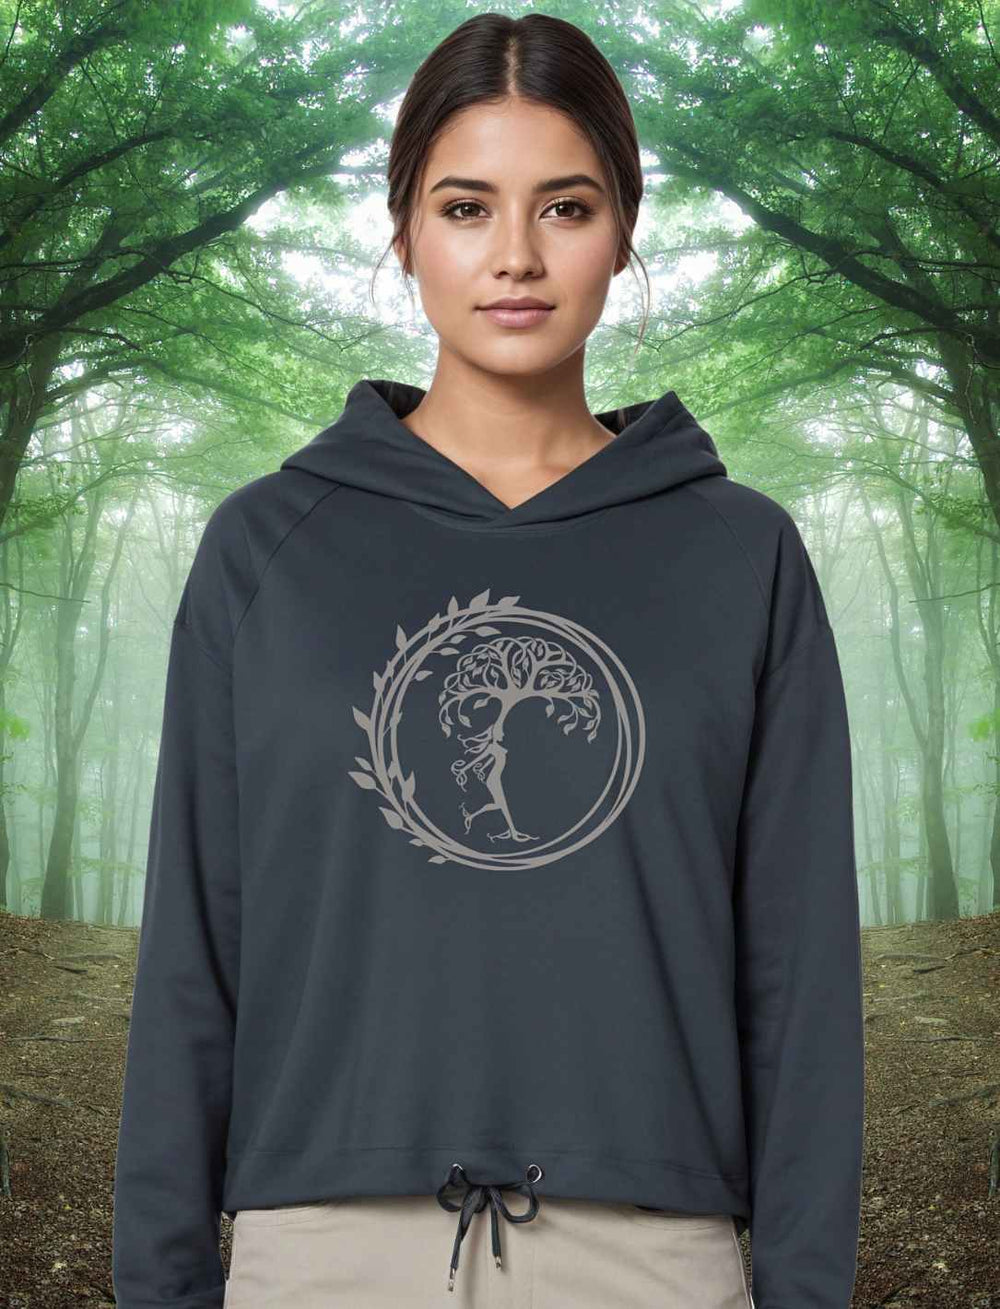 Junge Frau im Wald trägt den India Ink Grey Silvaner Lebensbaum Cropped Damen Hoodie von Runental.de, natürliche Umgebung betonend.